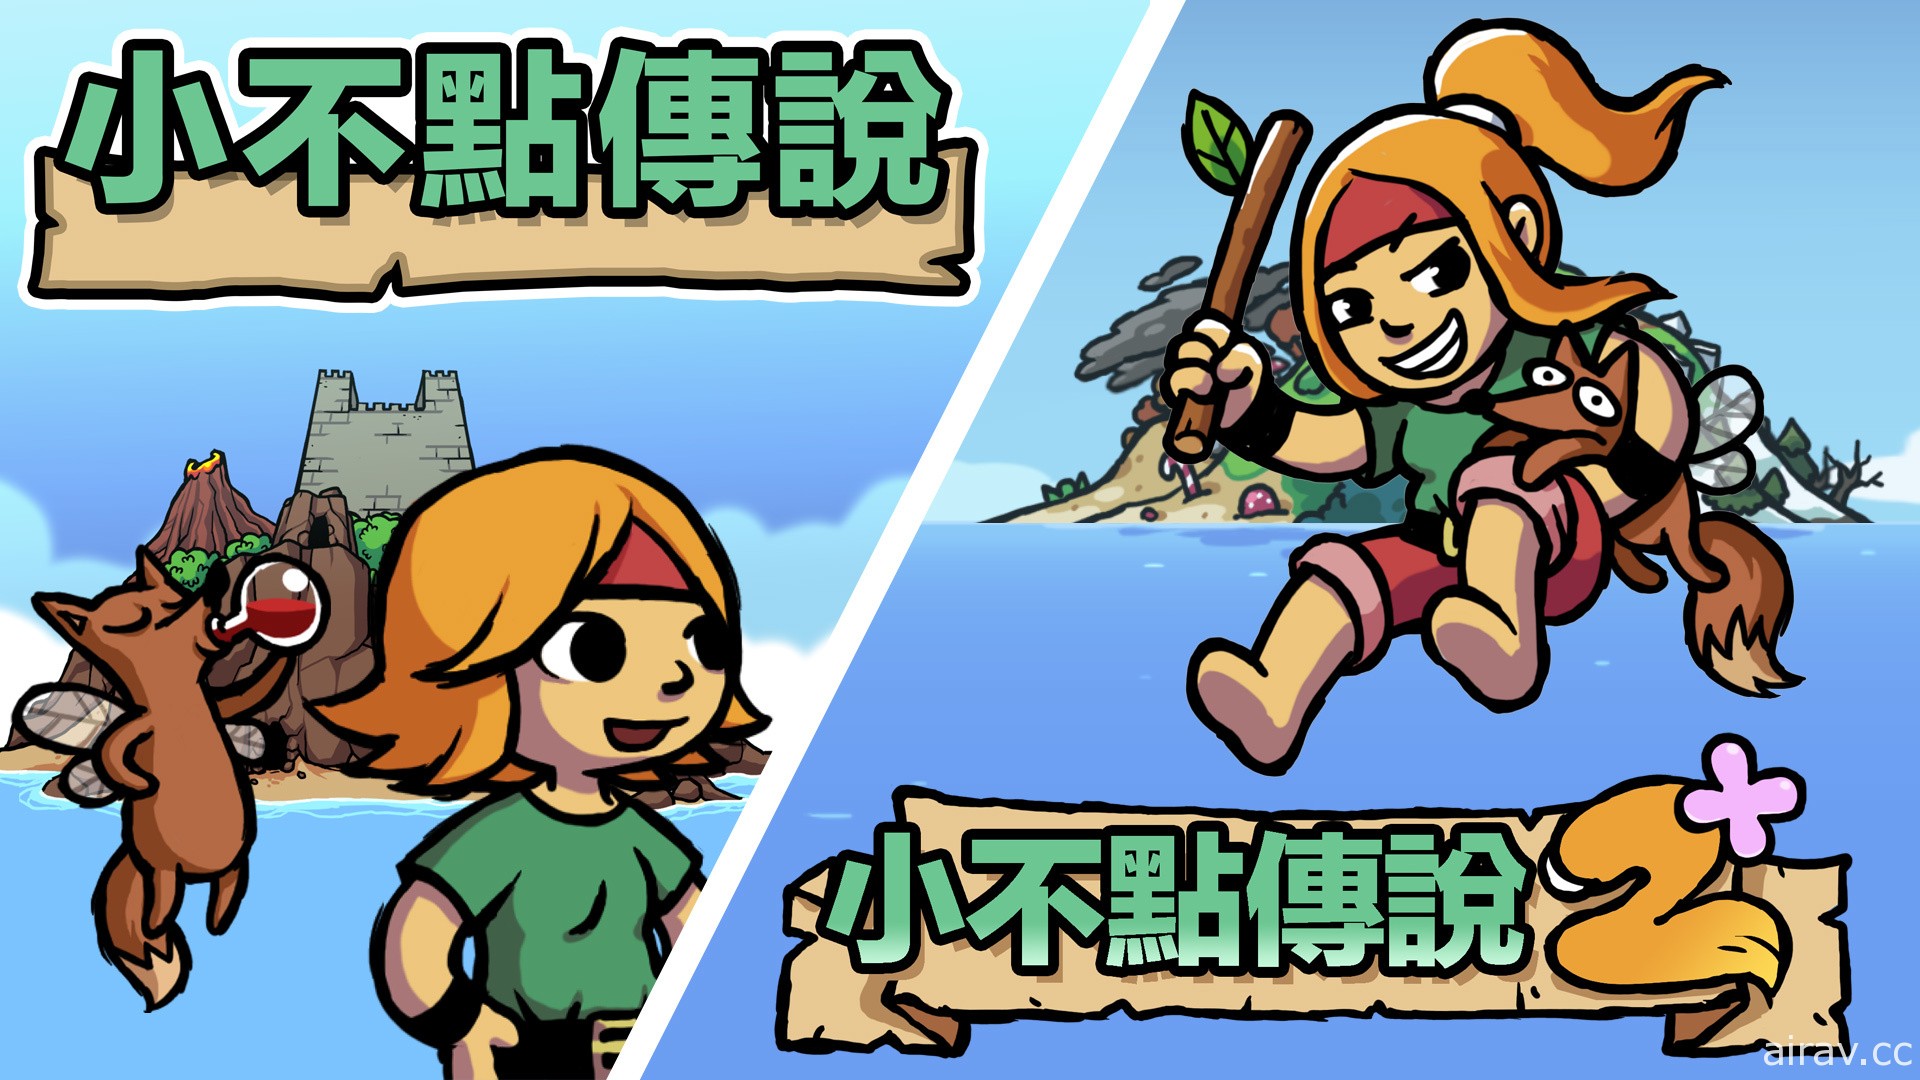 冒险游戏《小不点传说》《小不点传说 2+》将推 Switch 中文版